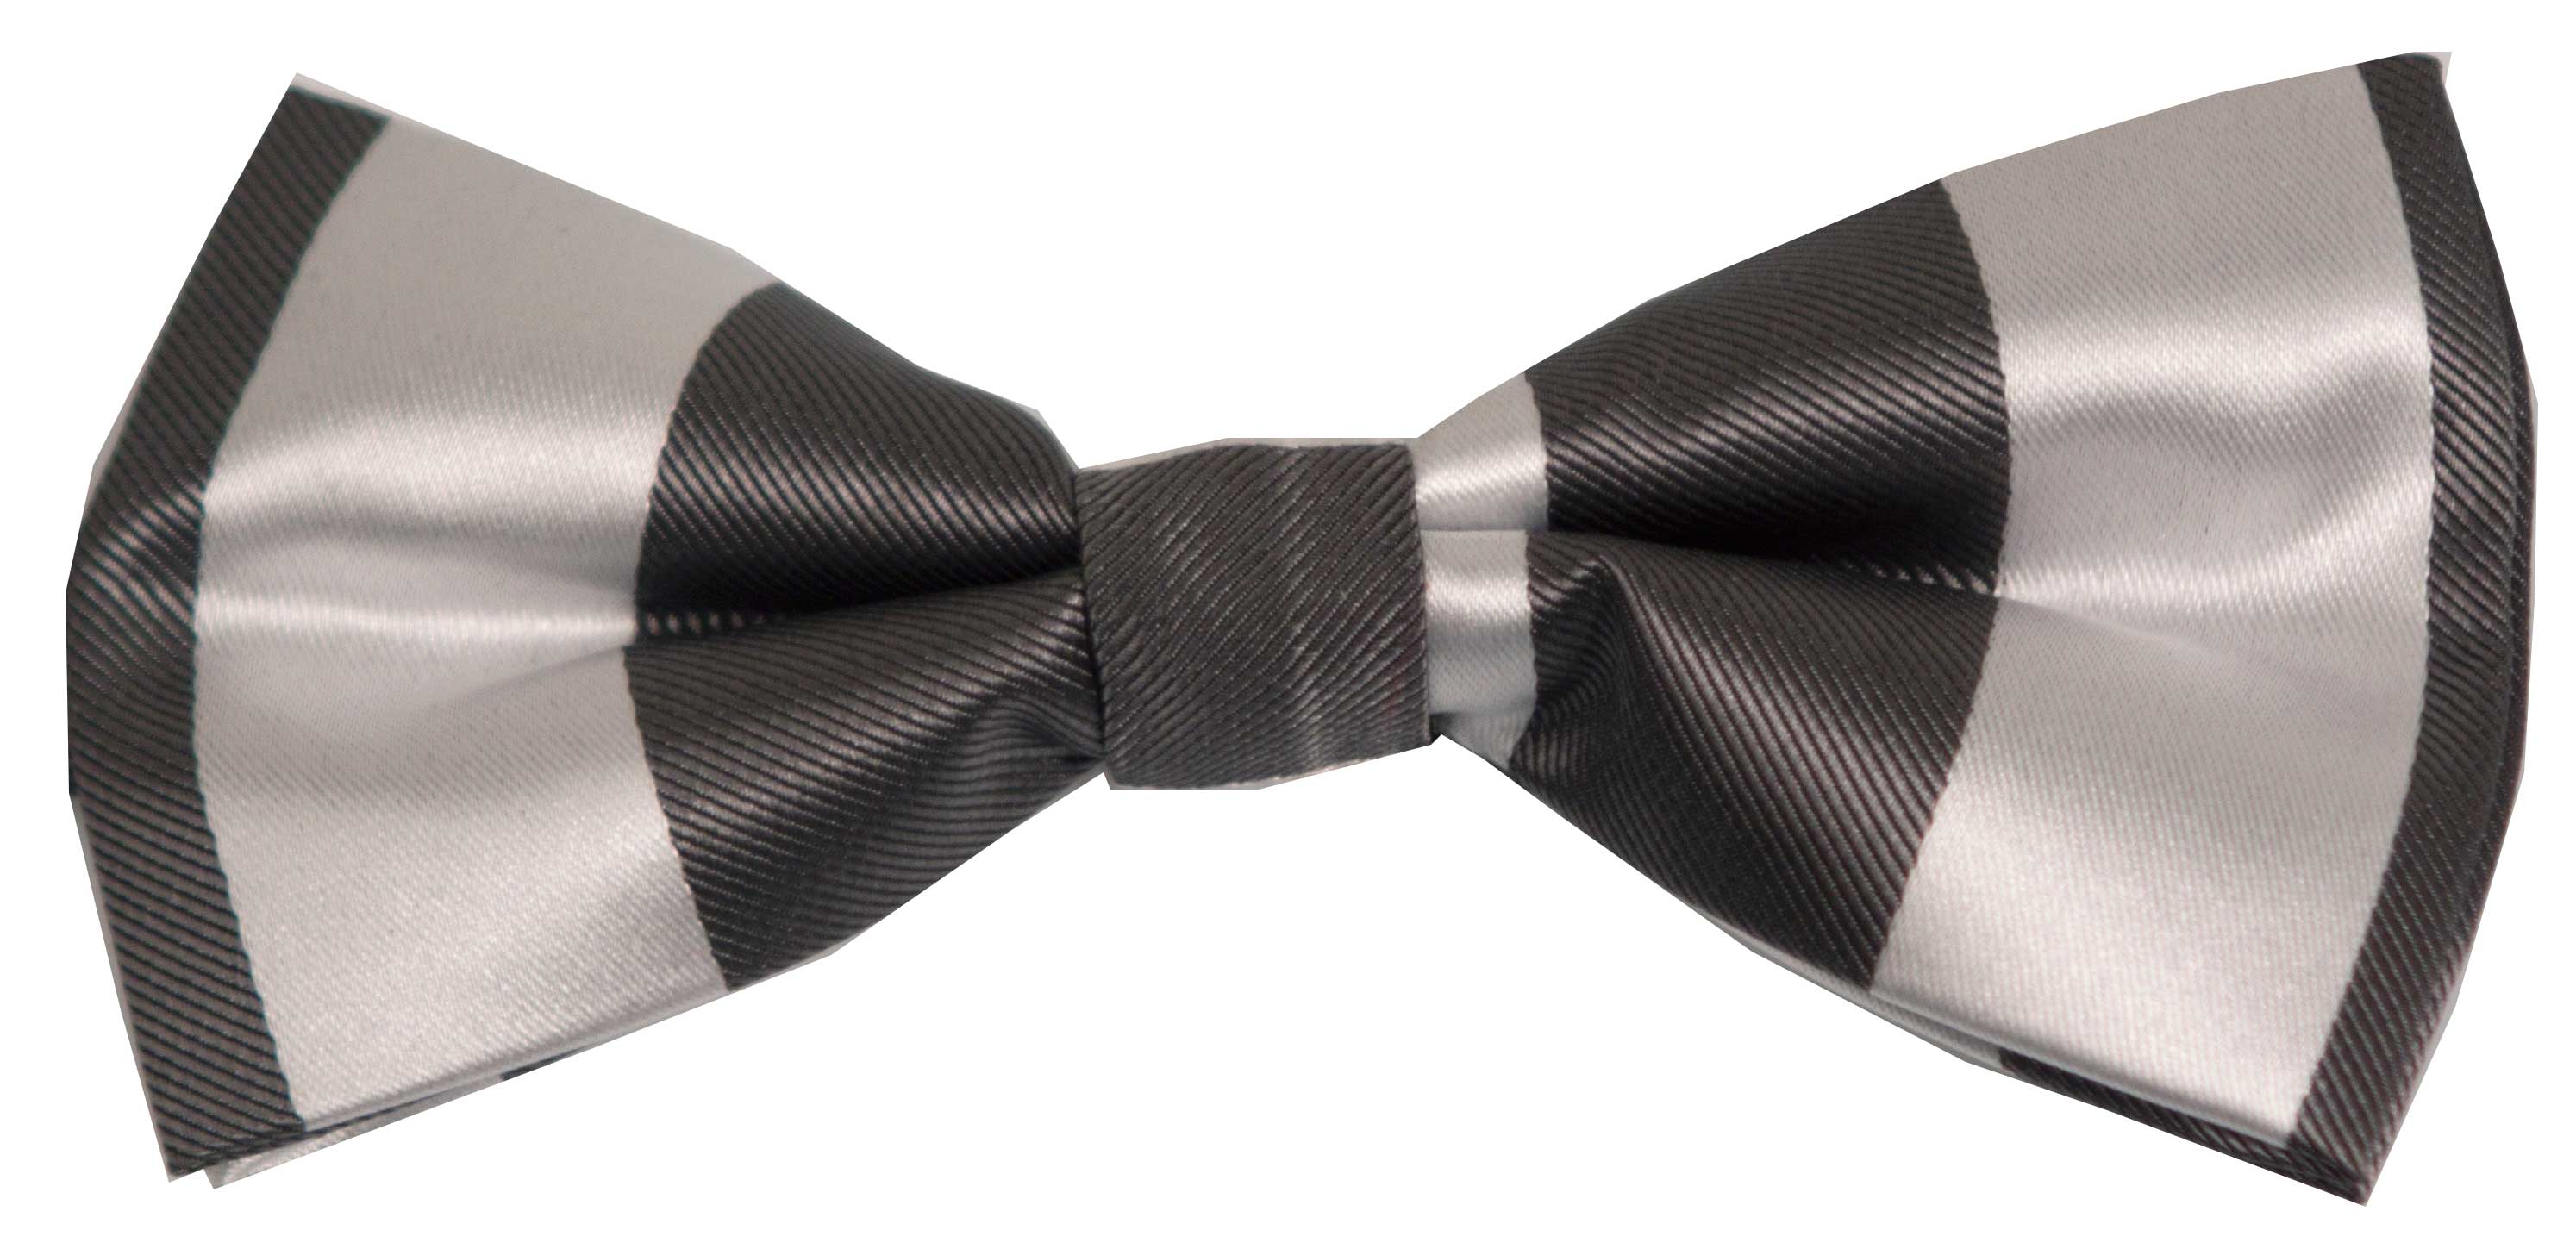 Bow tie (grey striped)